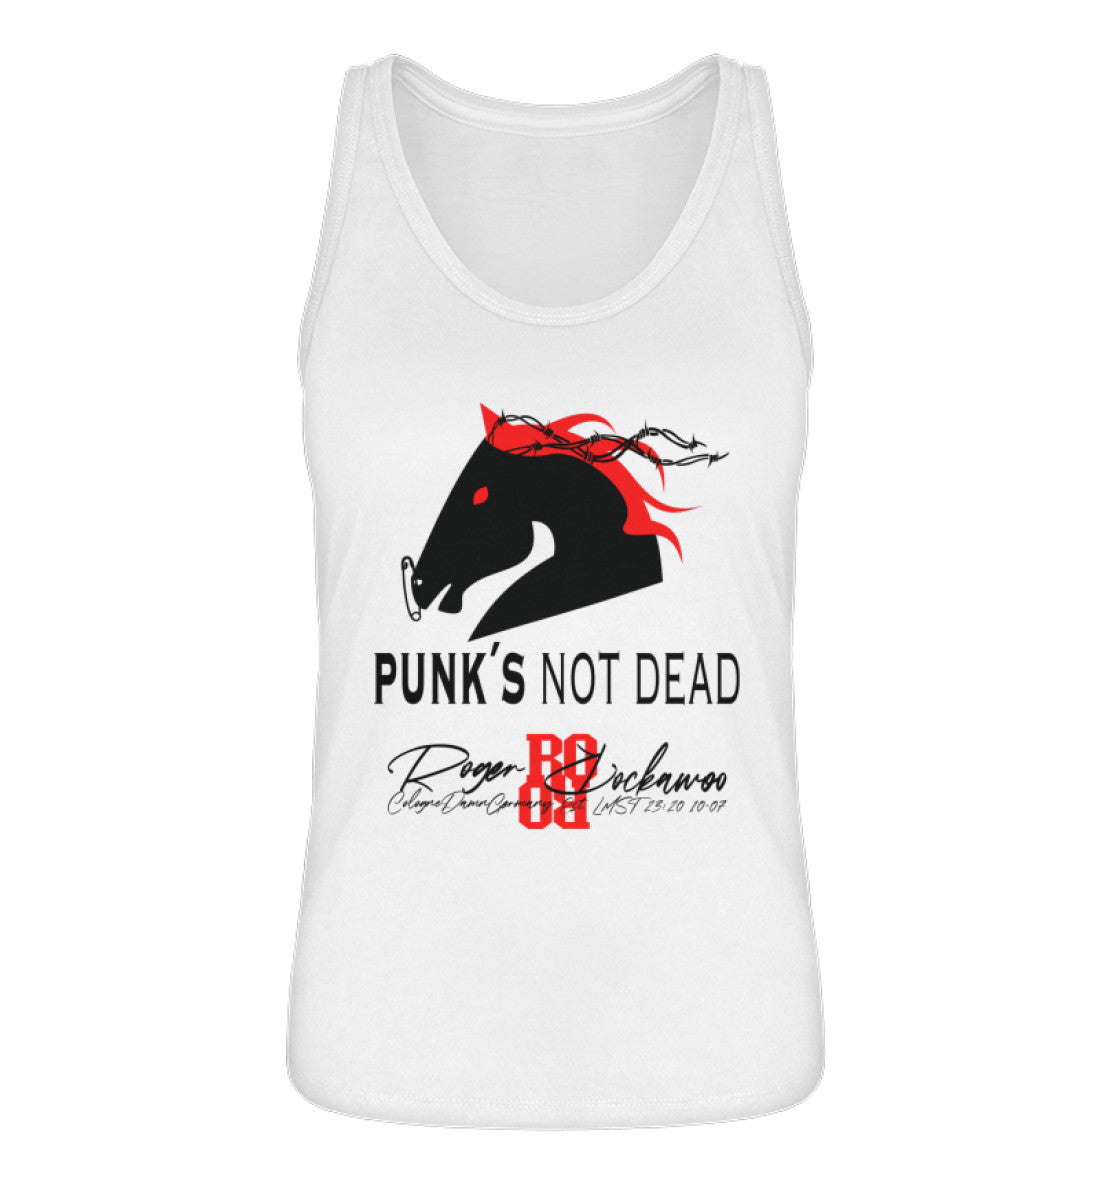 Tanktop Damen Frauen mit Print Design der Punks not dead Kollektion mit Pferde Kopf Motiv im Roger Rockawoo Fashion Webstore White-3